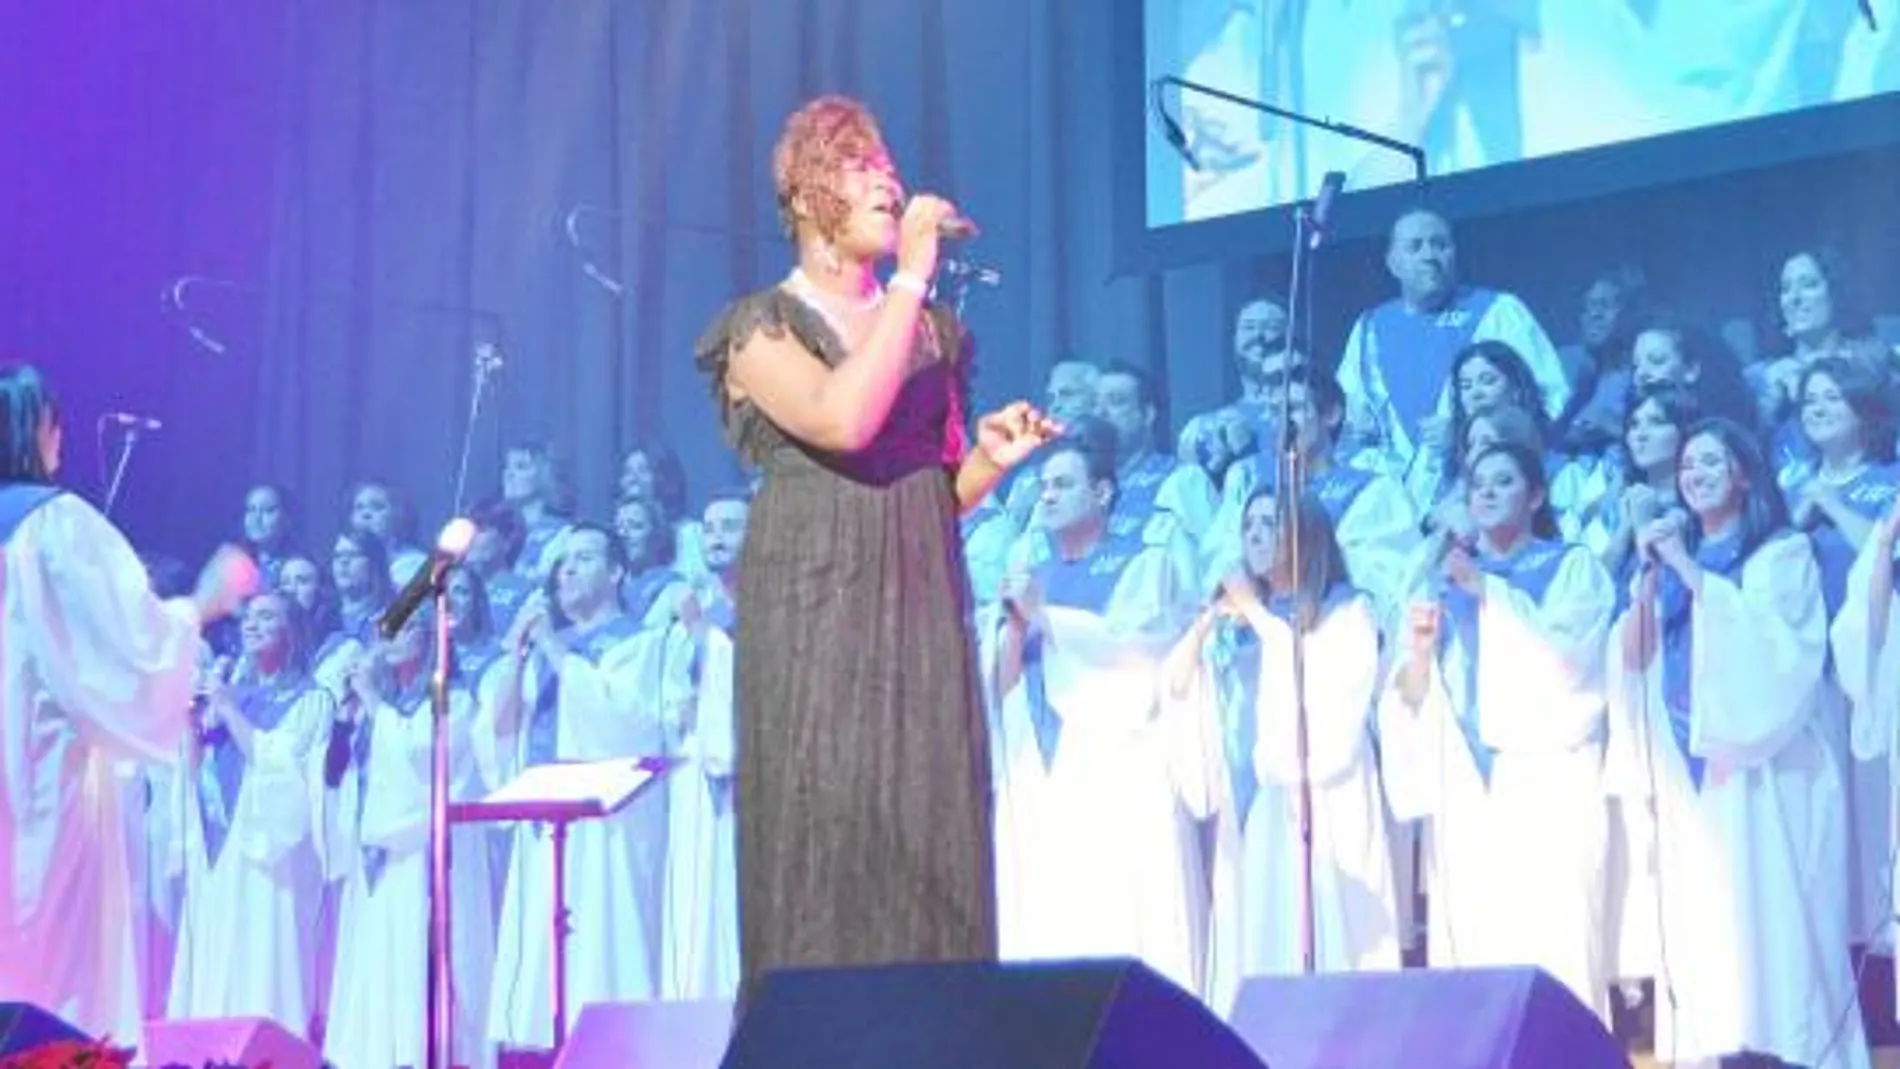 El coro góspel Living Water, integrado por músicos y cantantes madrileños, ha pisado en su trayectoria más de un centenar de escenarios